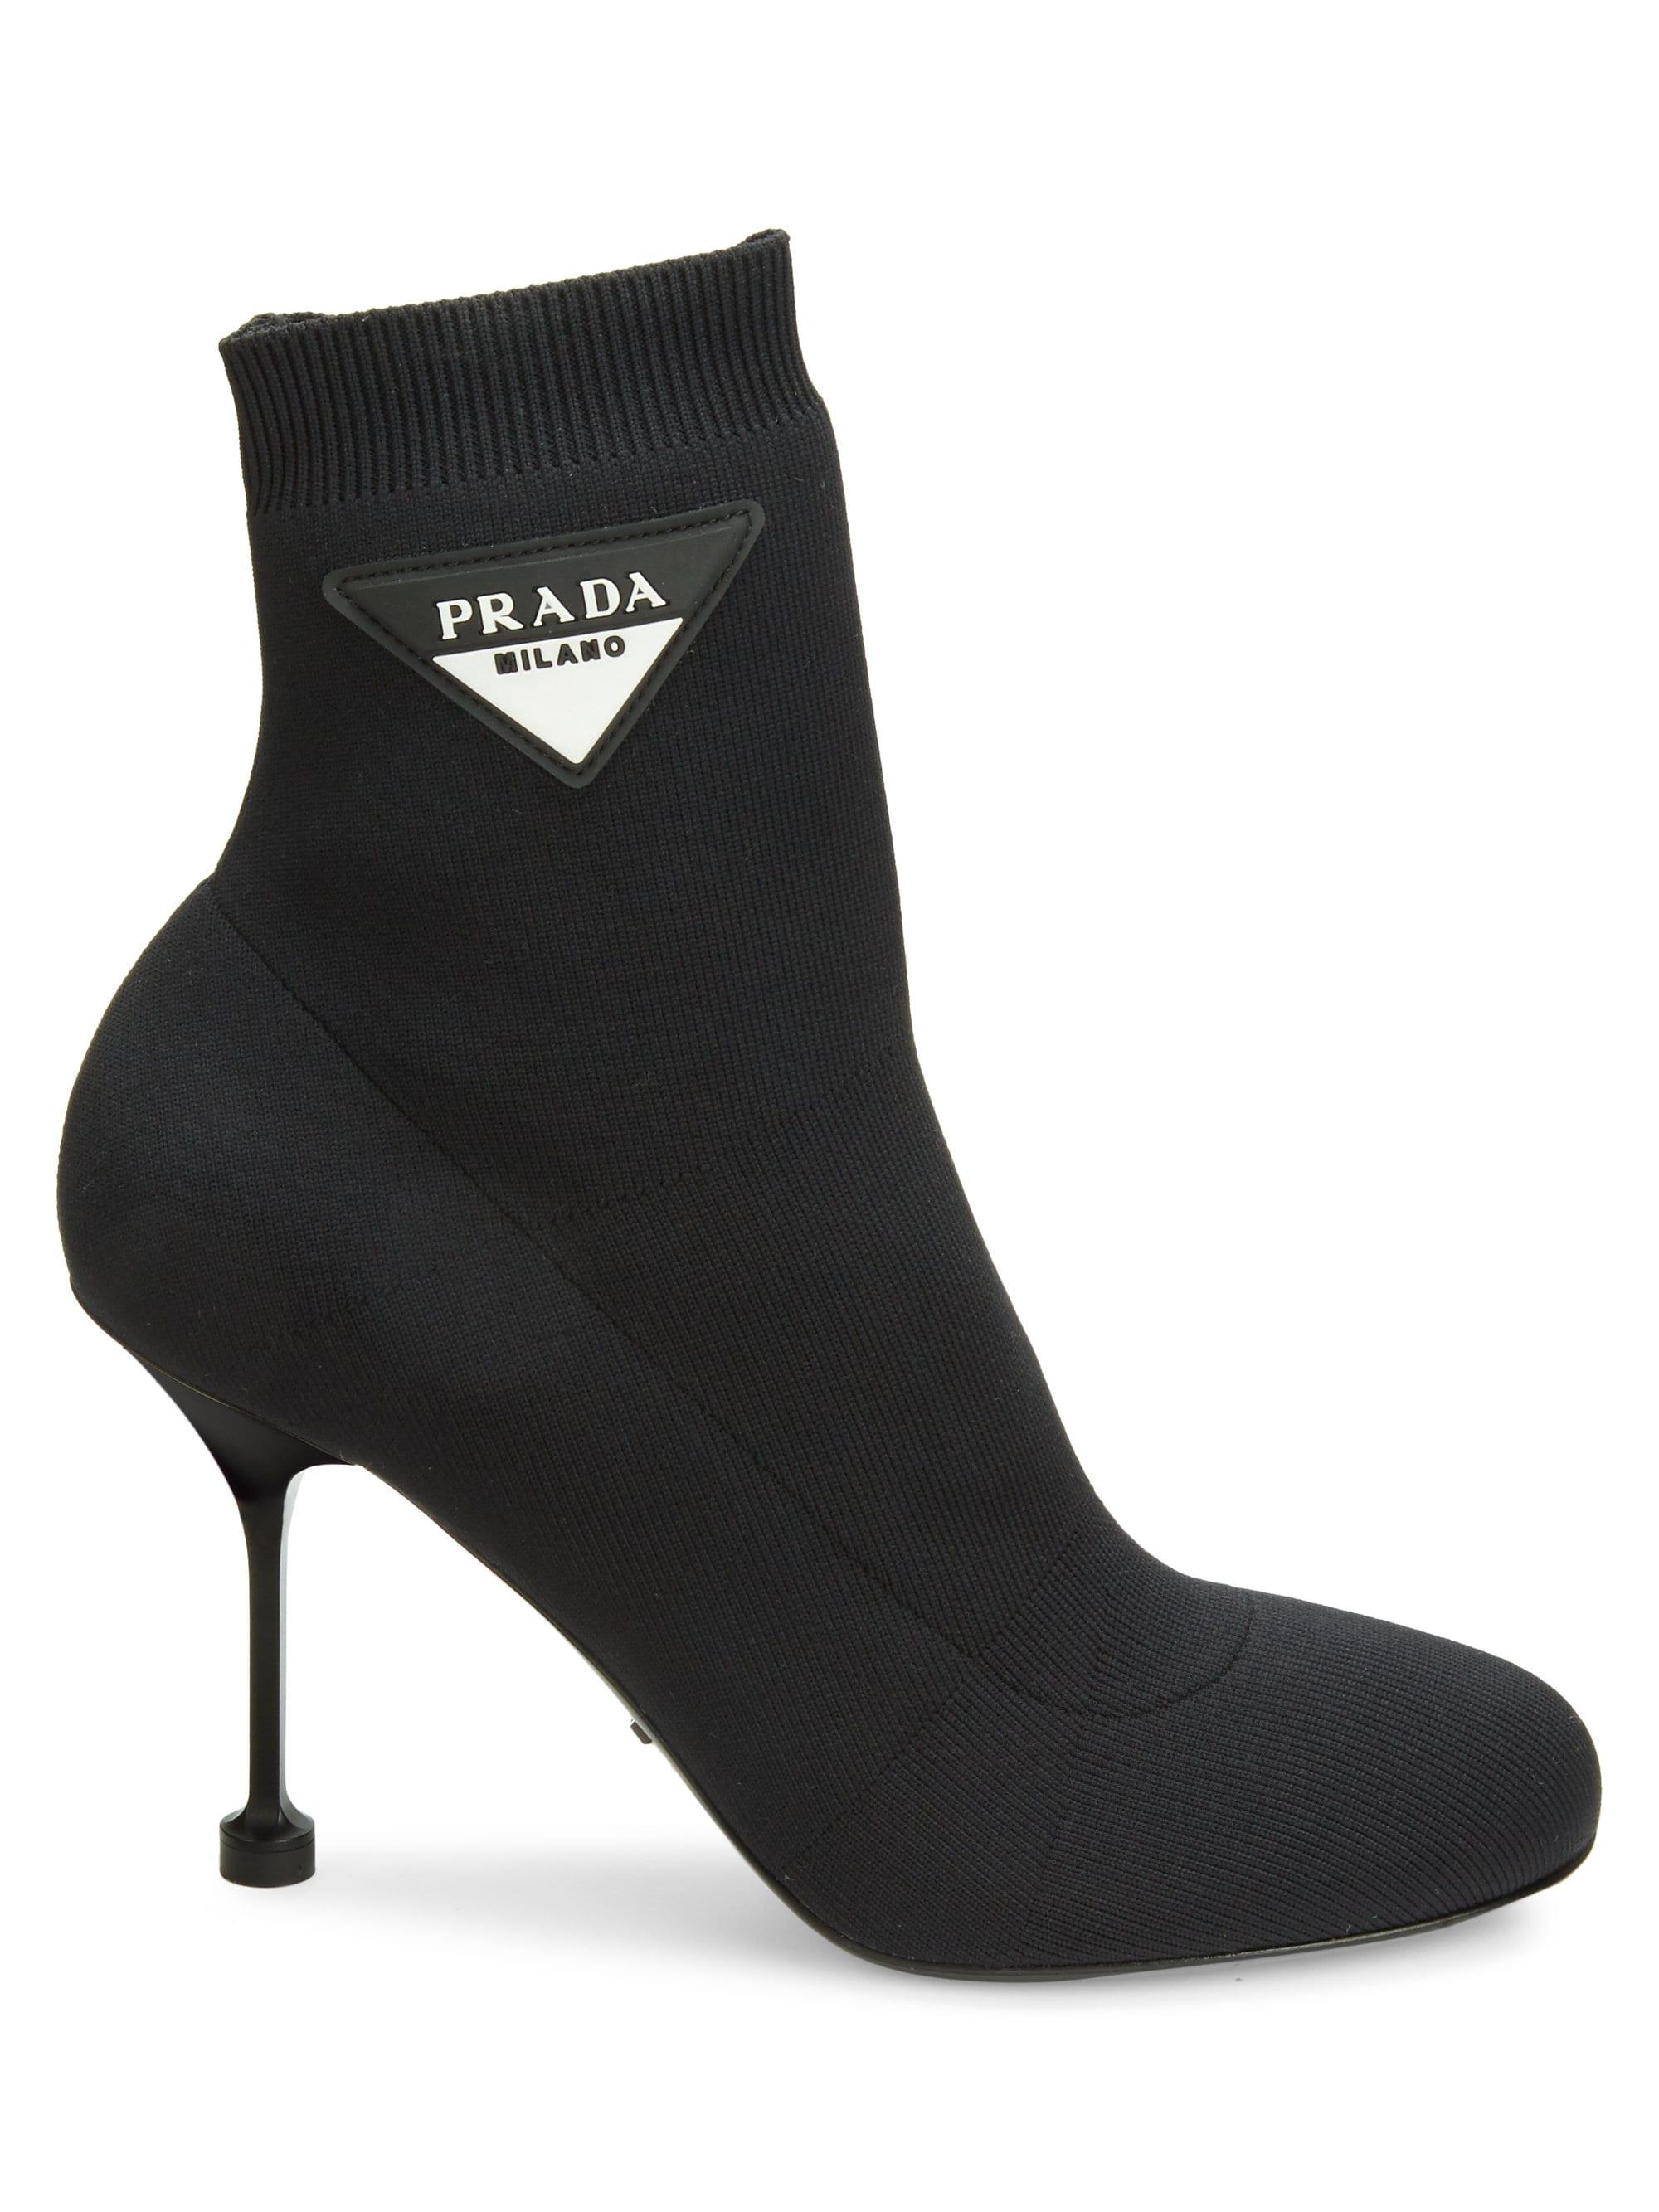 prada black sock shoes